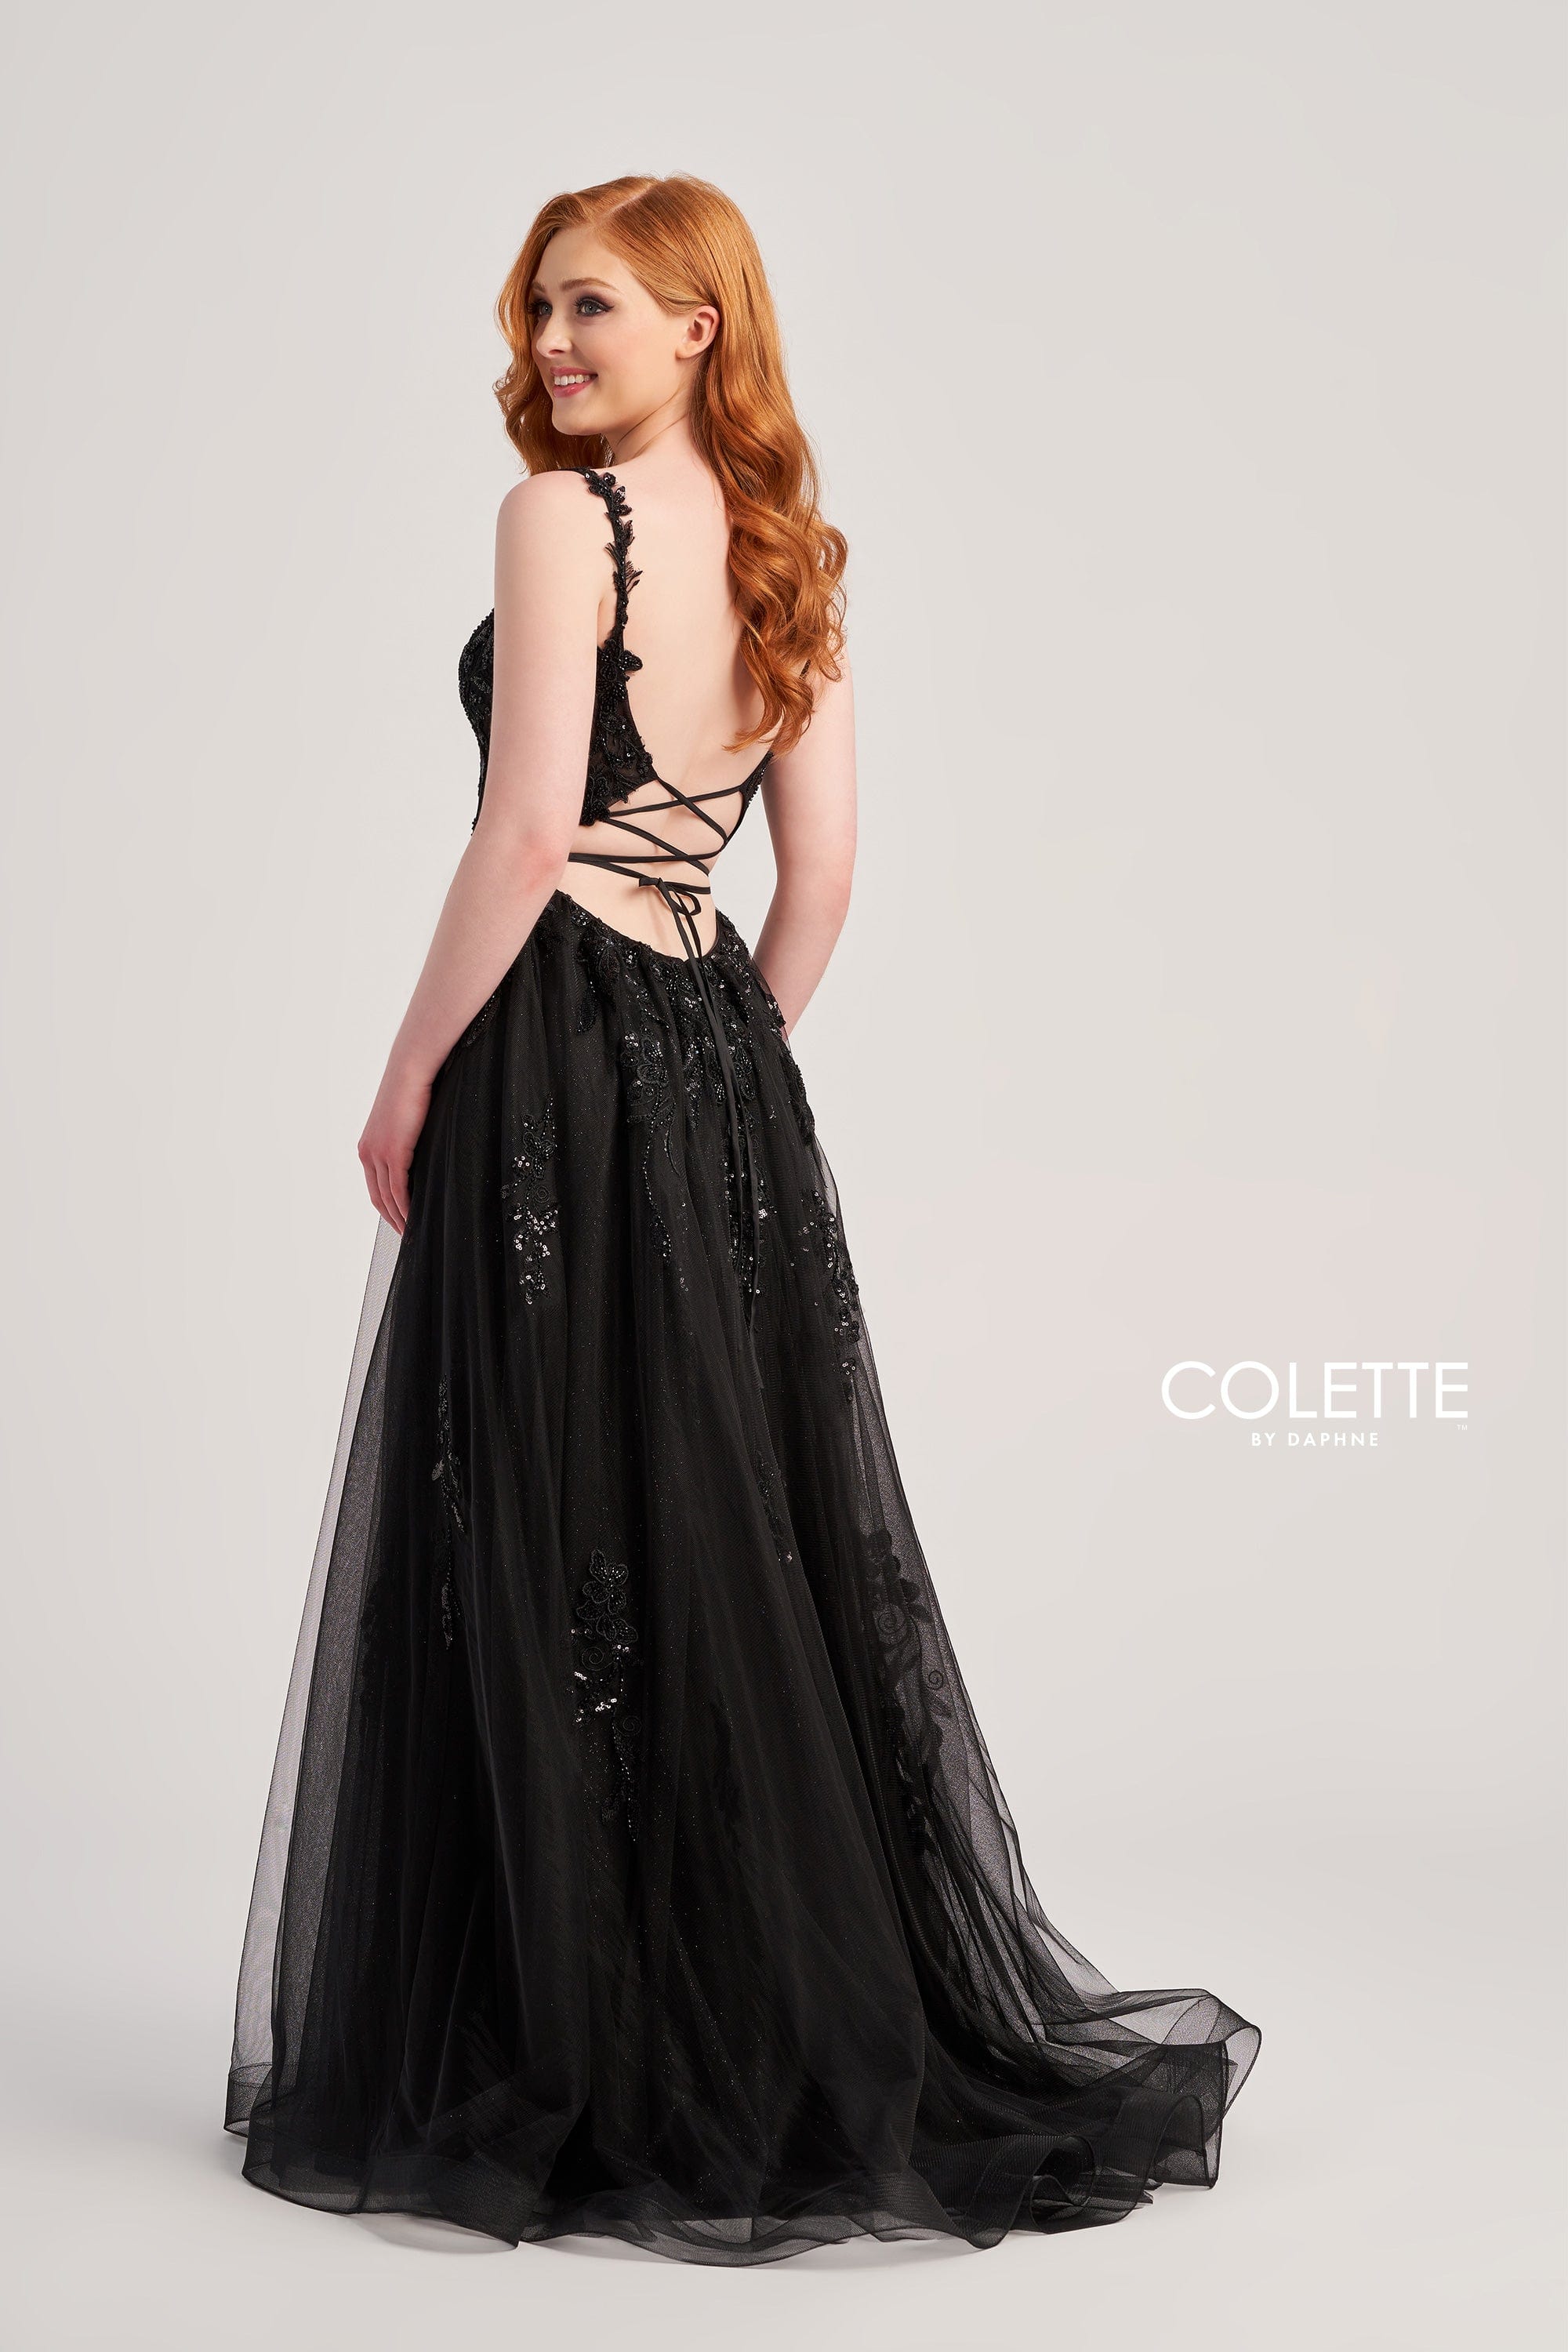 Colette for Mon Cheri Prom Colette: CL5287